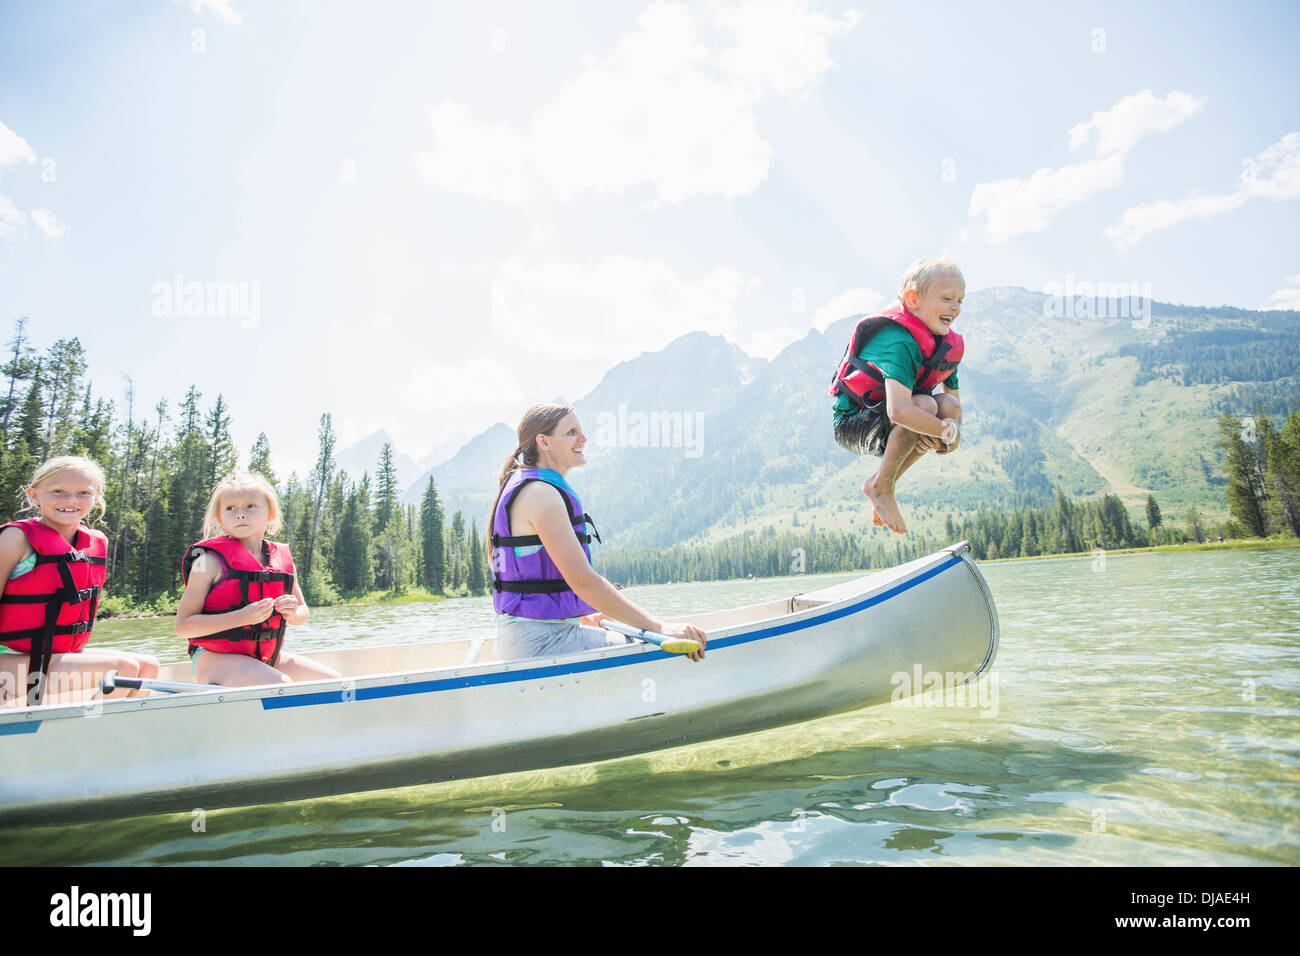 Kaukasische junge springen von Kanu in See Stockfoto